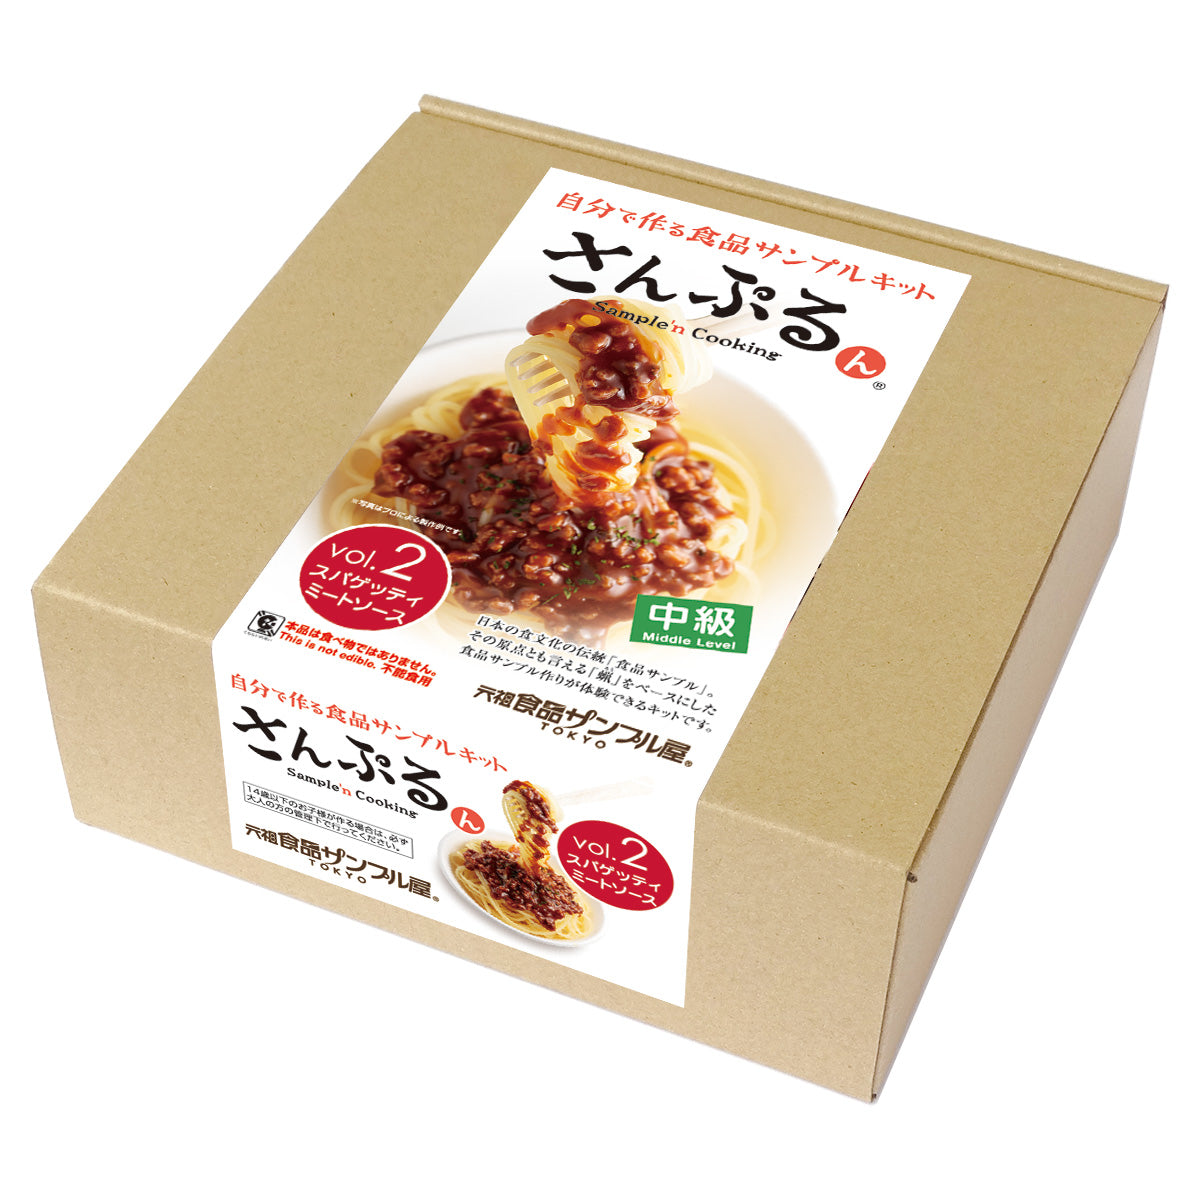 これは自分でつくる食品サンプルキット「さんぷるんVol.2 スパゲッティミートソース」の外箱の写真です。